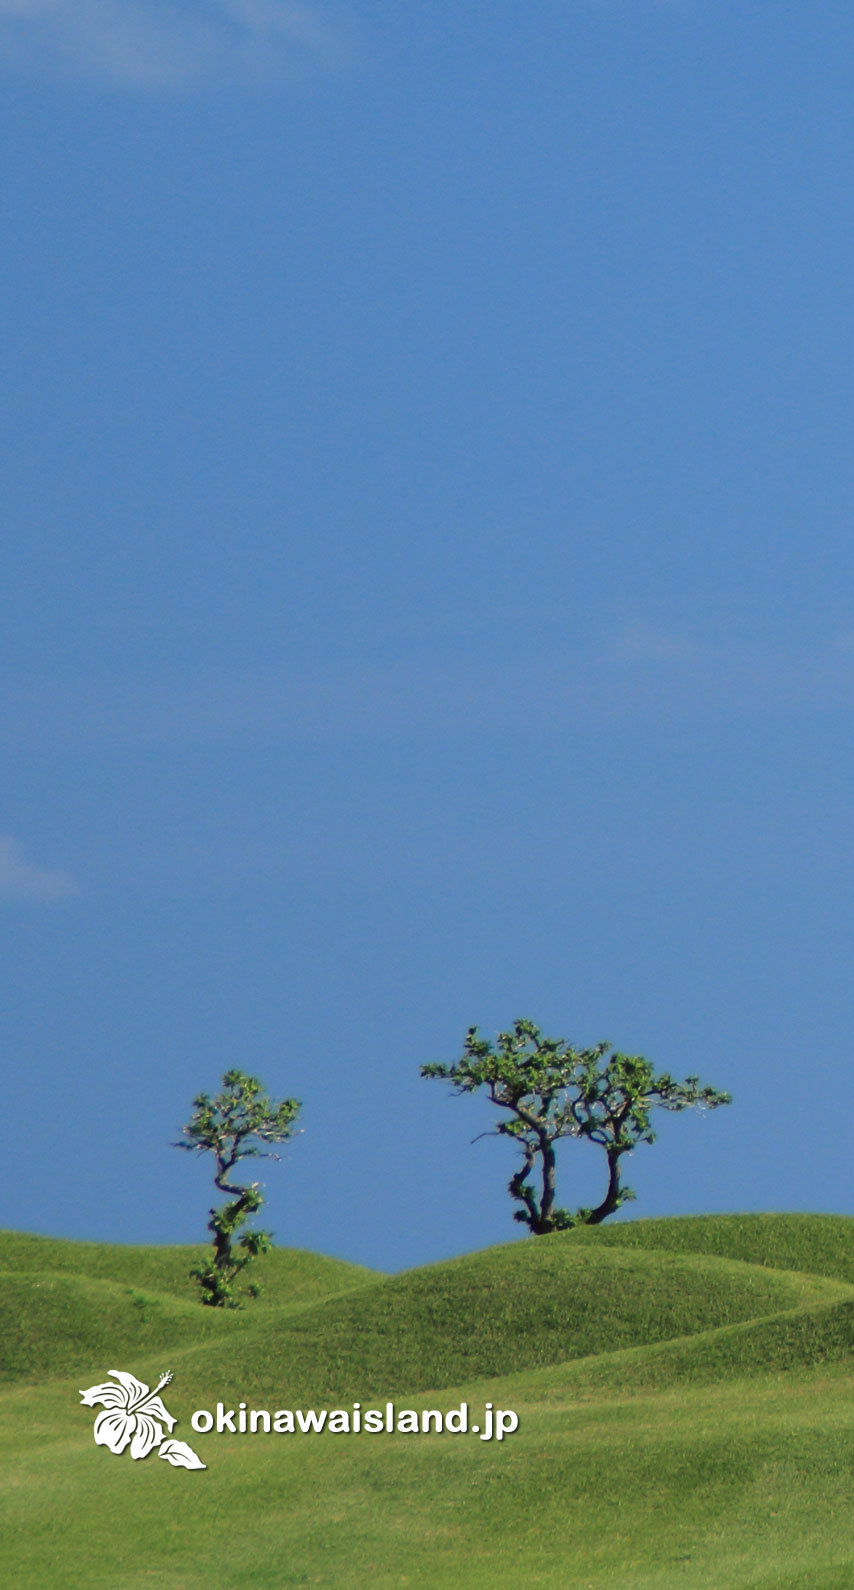 沖縄の風景 壁紙 デスクトップカレンダー 無料ダウンロード モンパの木の丘